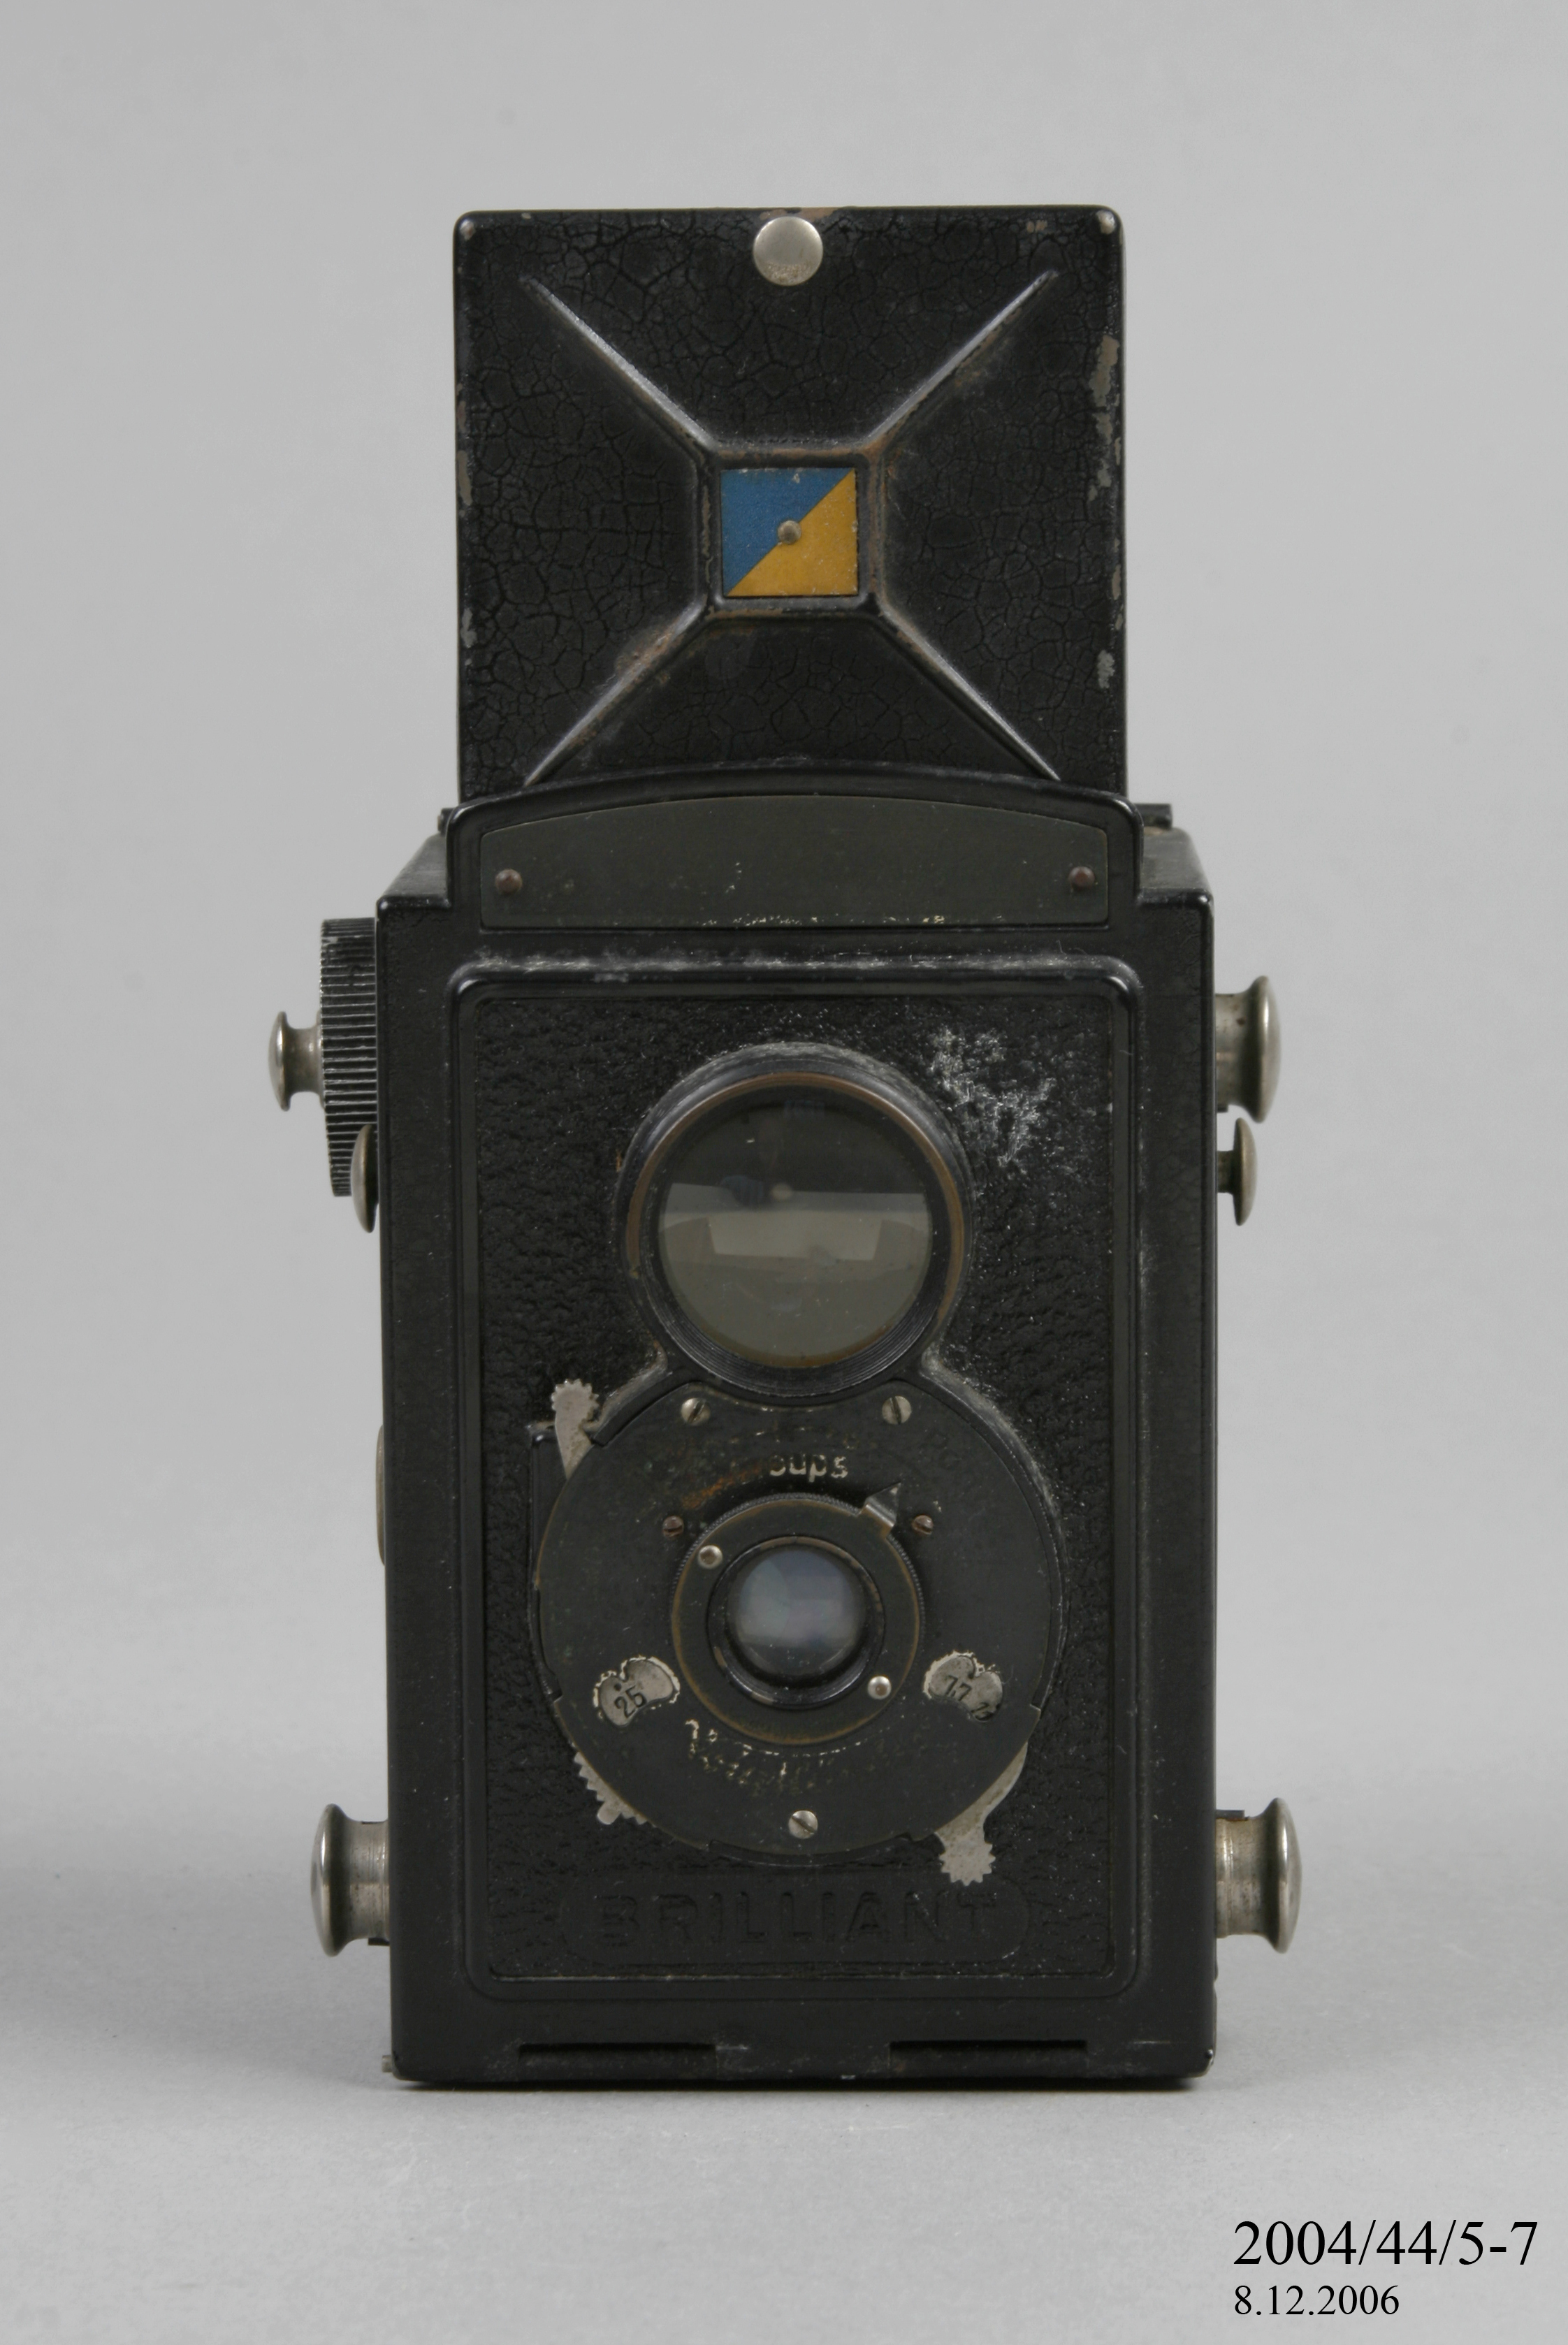 A Brilliant box camera made by Voigtlander